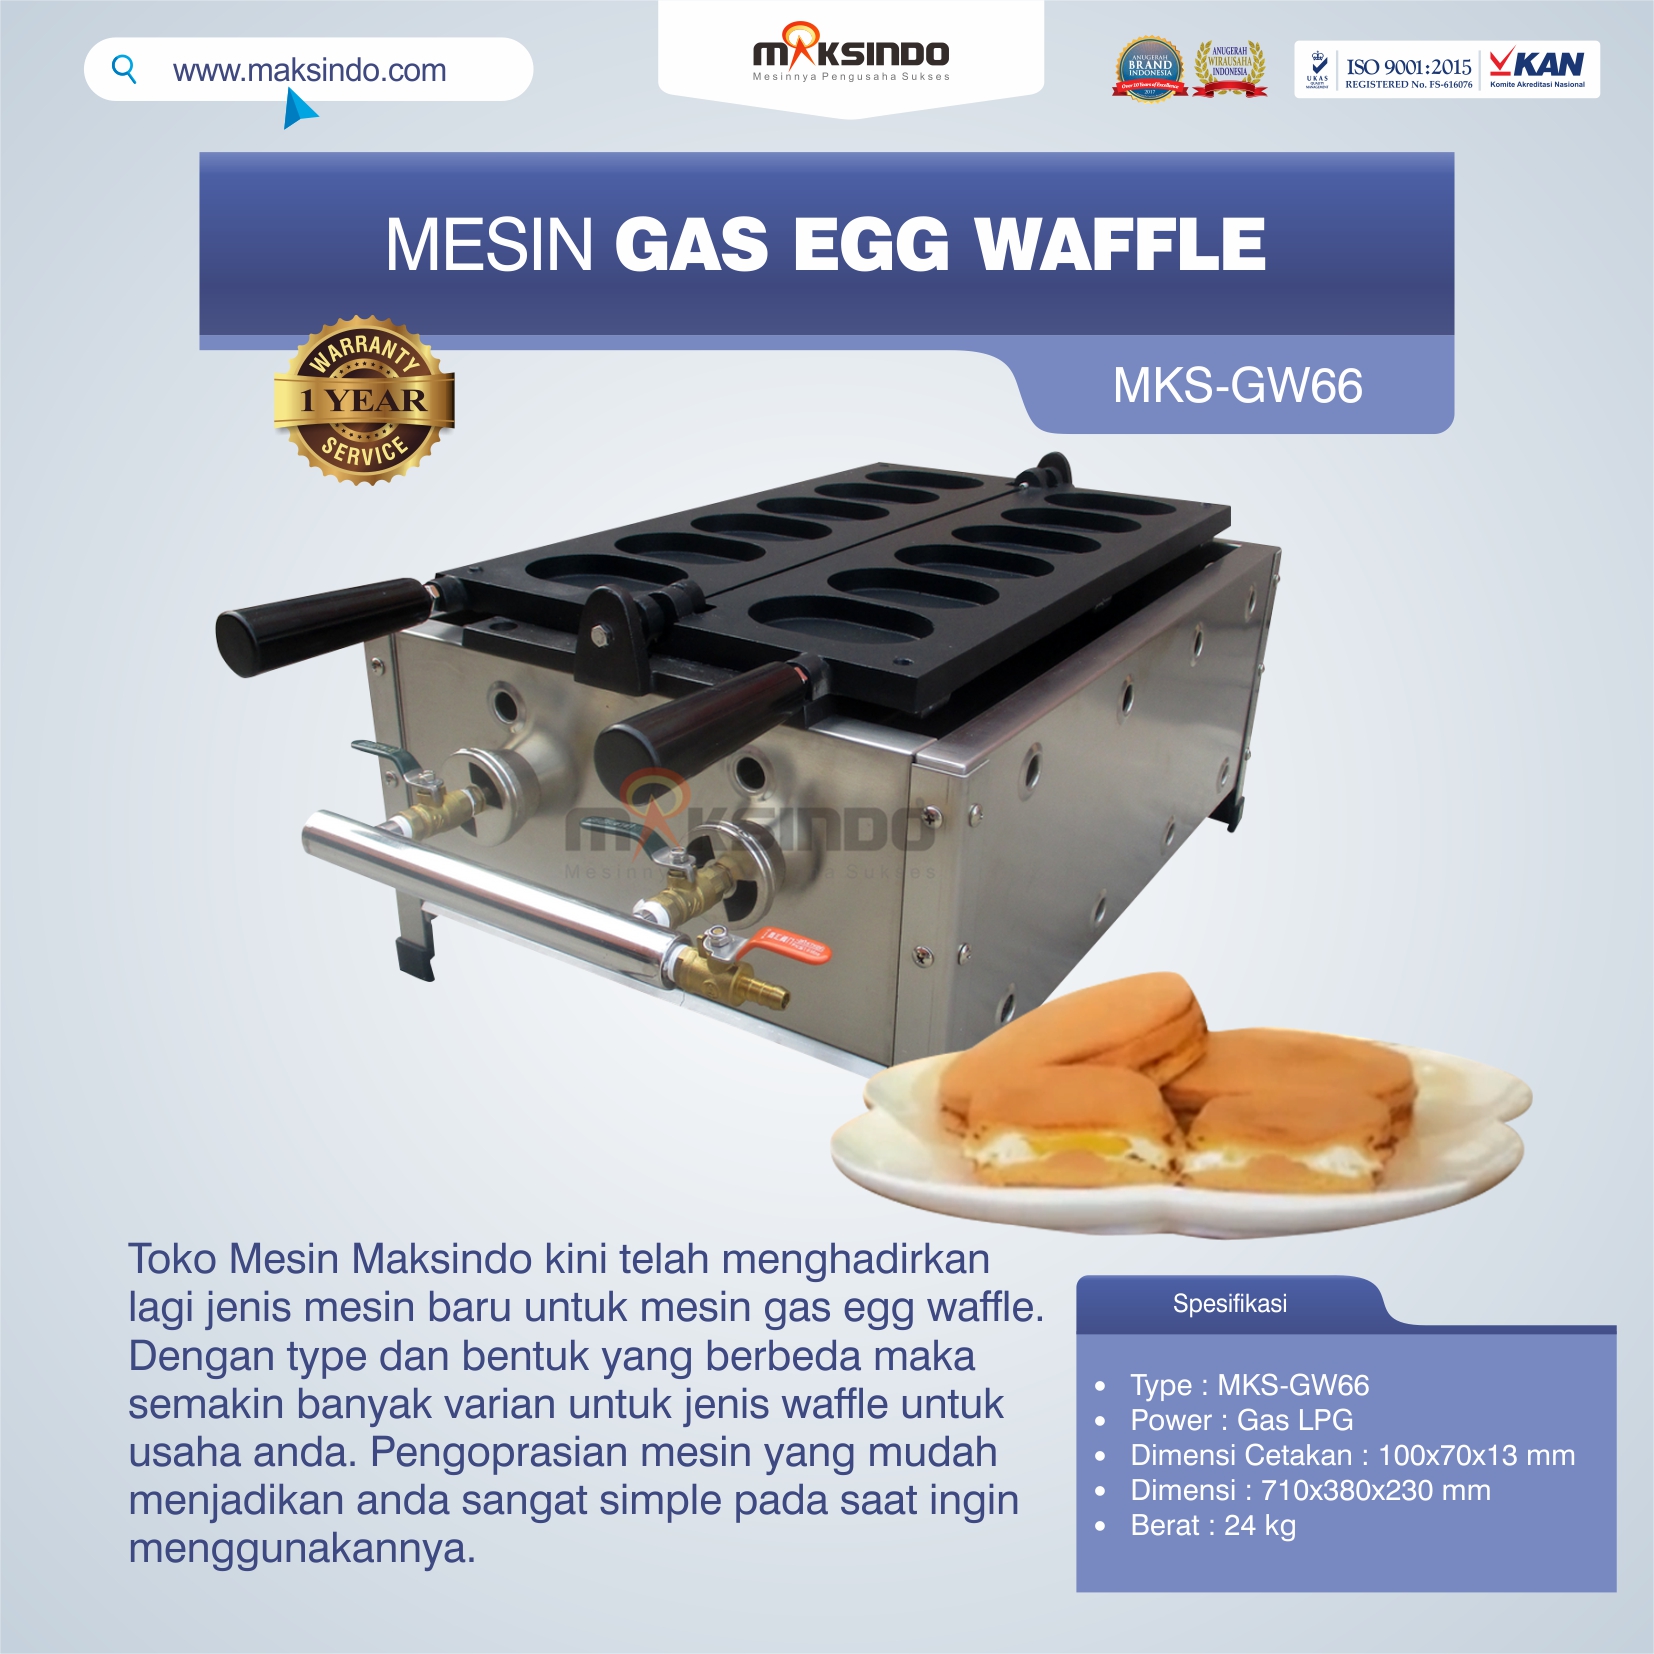 Jual Mesin Gas Egg Waffle MKS-GW66 di Tangerang